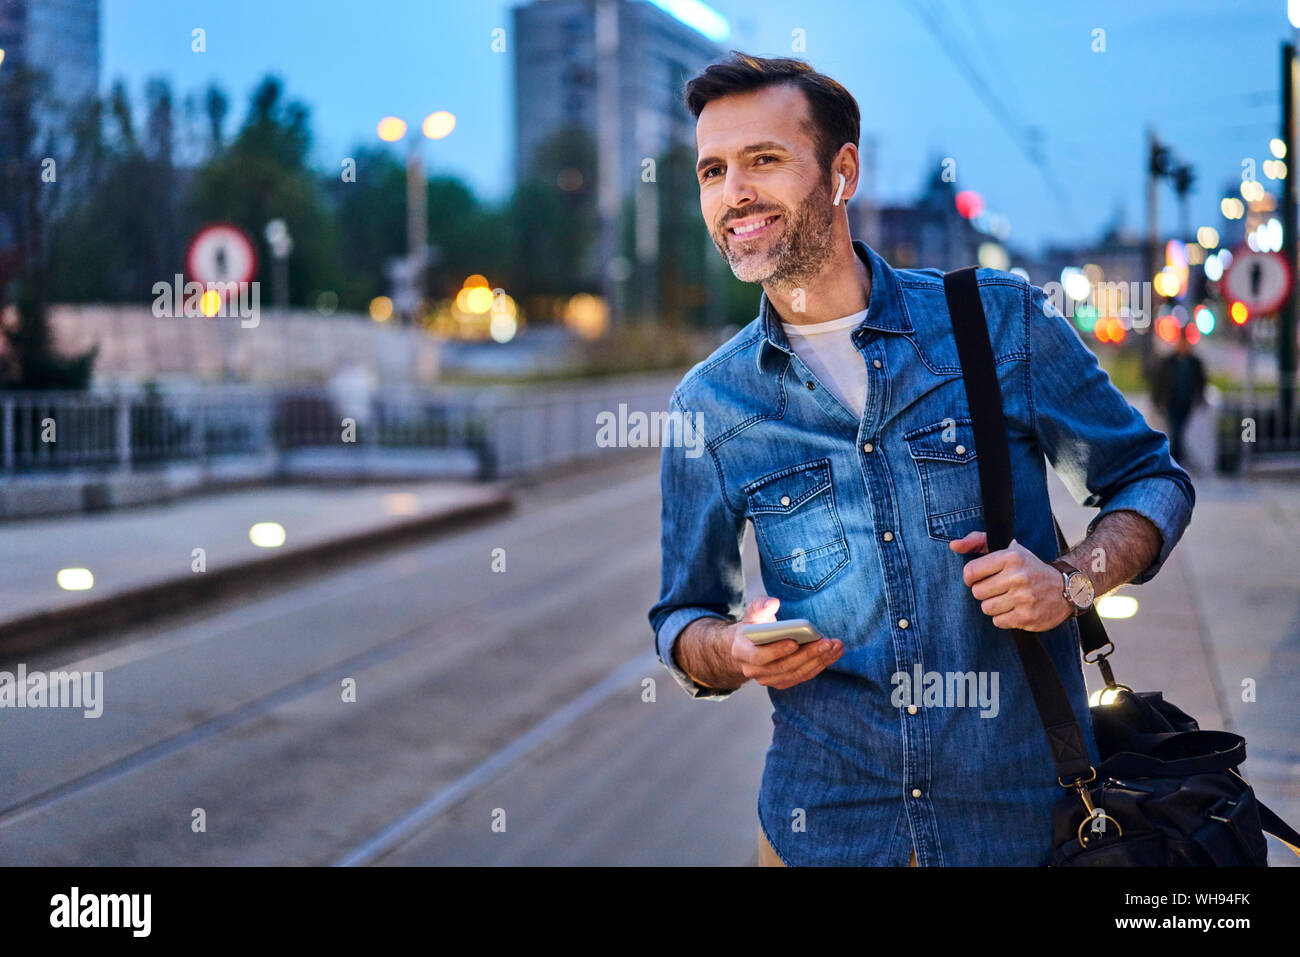 Hombre sonriente con auriculares inalámbricos y smartphone esperando en la parada de tranvía de conmutar durante la noche después del trabajo Foto de stock